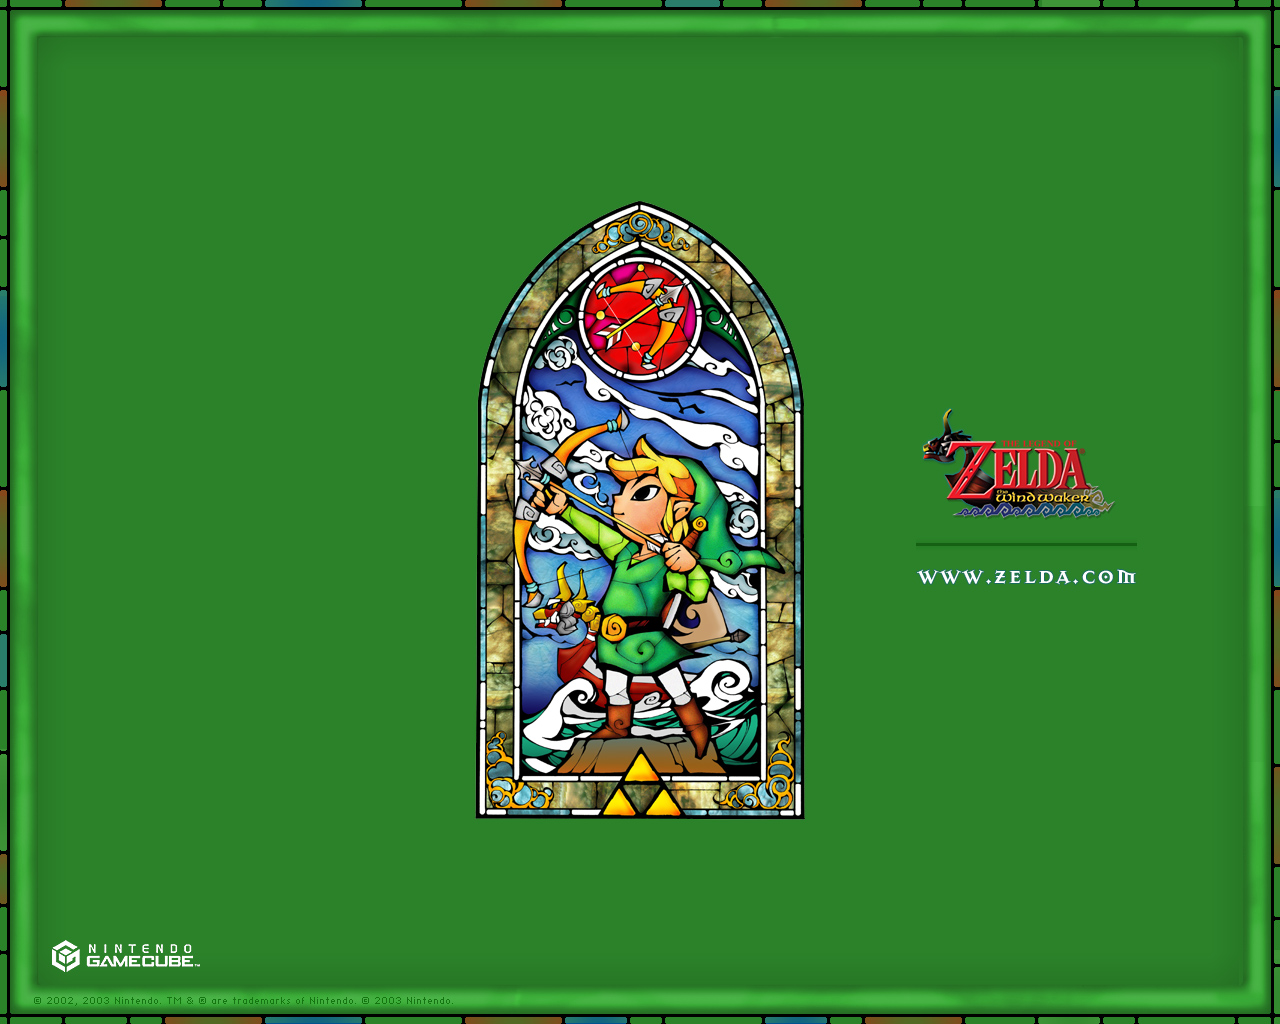 Zelda The Wind Waker   Official Wallpapers Desktops Backgrounds 1280x1024